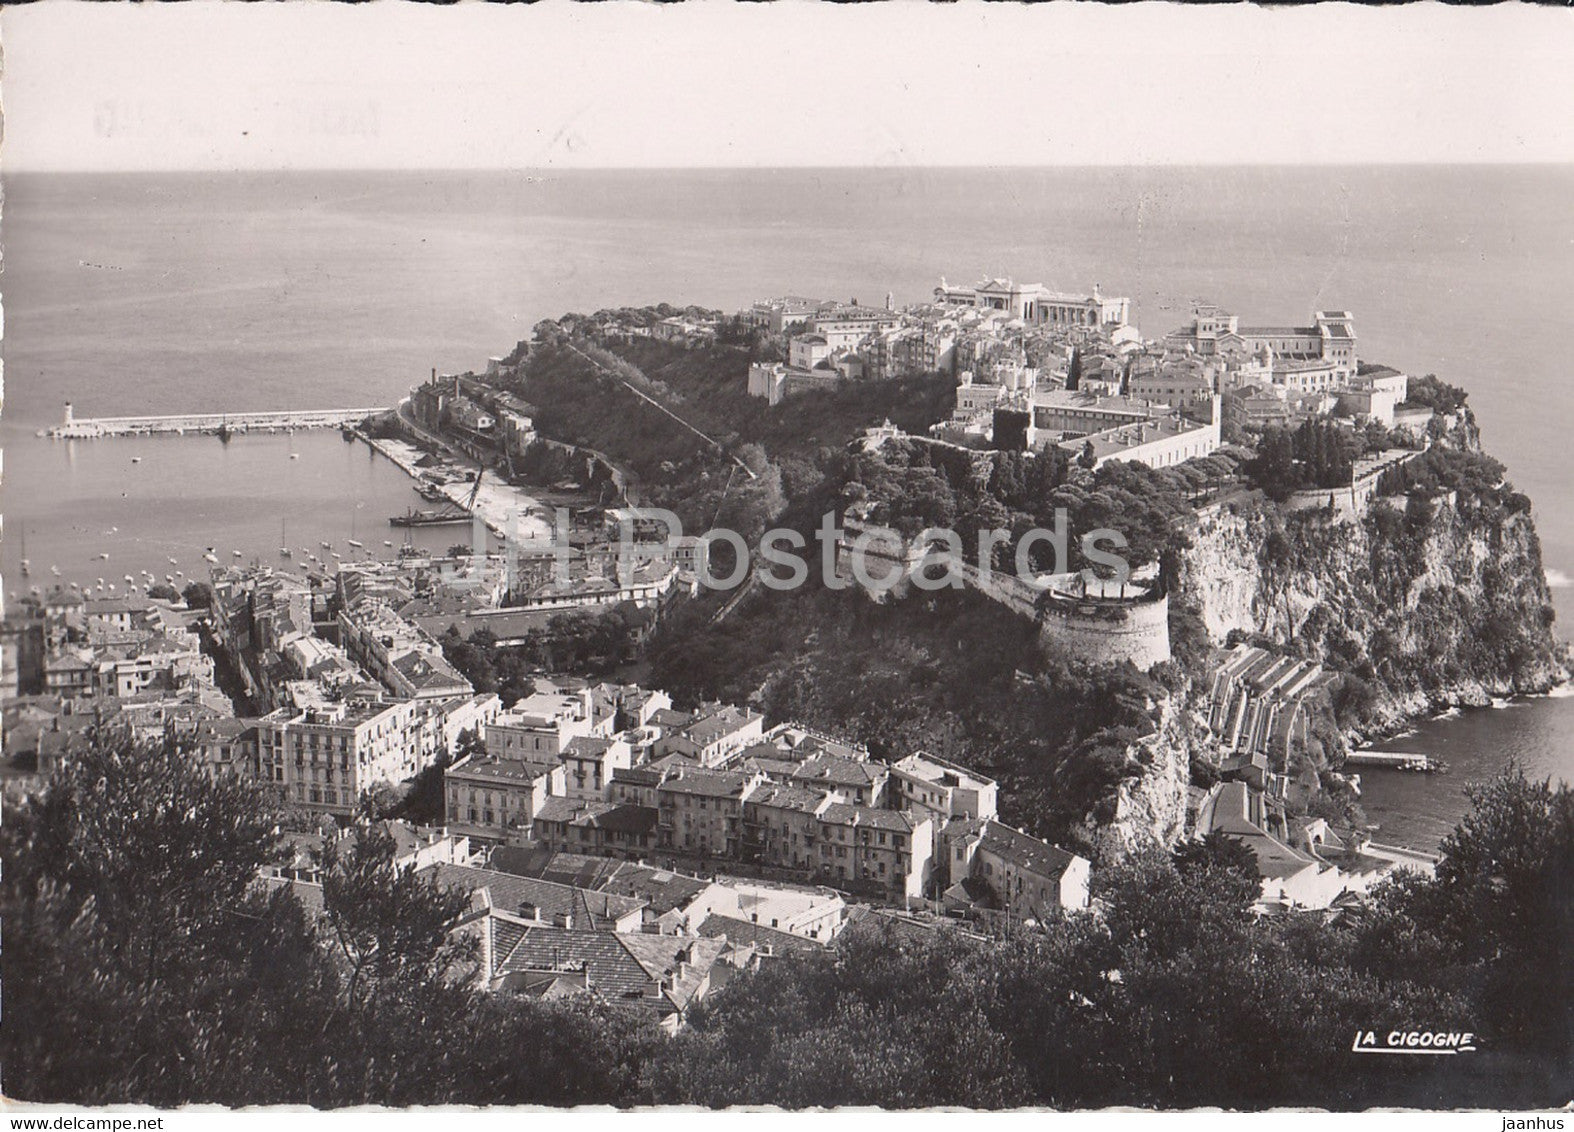 Vue d'ensemble du rocher et la Condamine - old postcard - 1953 - Monaco - used - JH Postcards